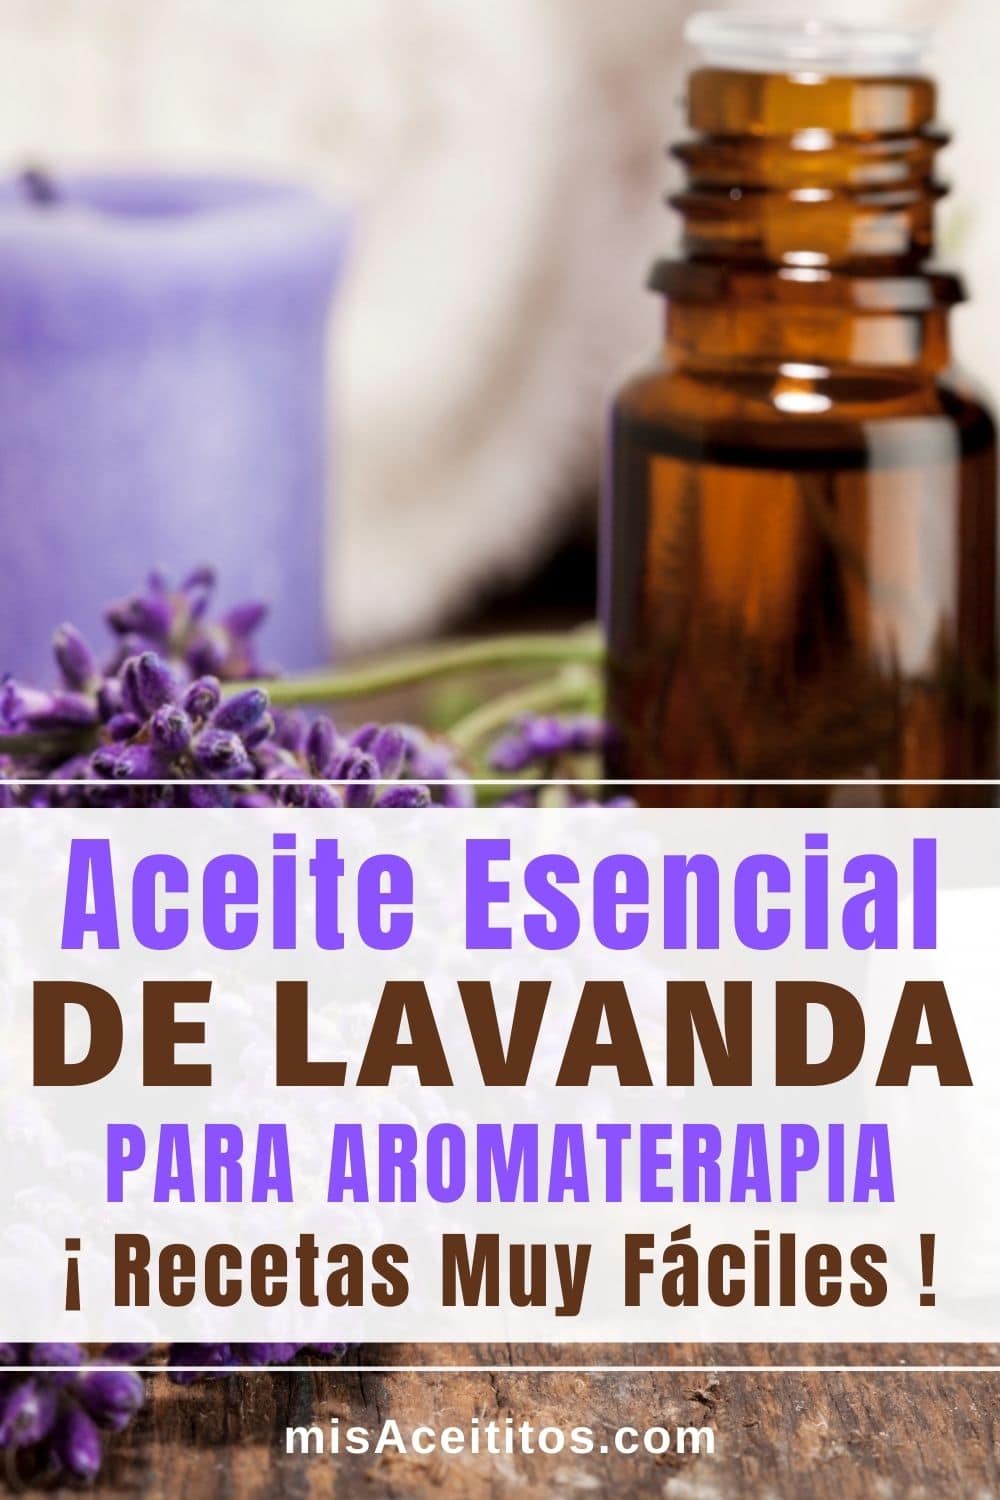 Utiliza aceite esencial de lavanda para aromaterapia.